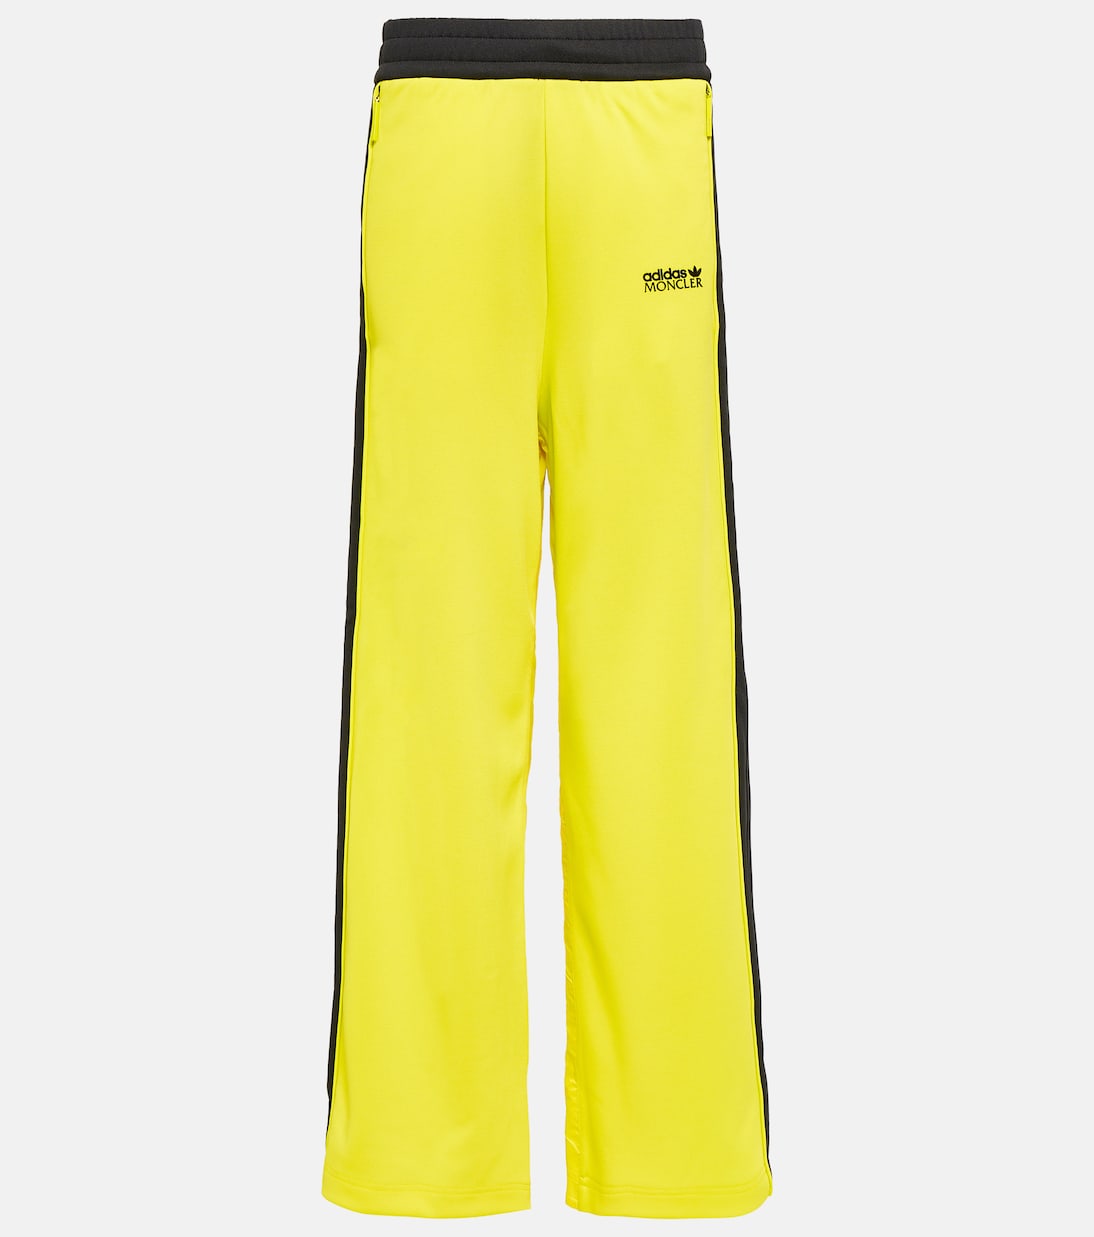 Широкие спортивные брюки adidas из коллекции x. Moncler Genius, желтый